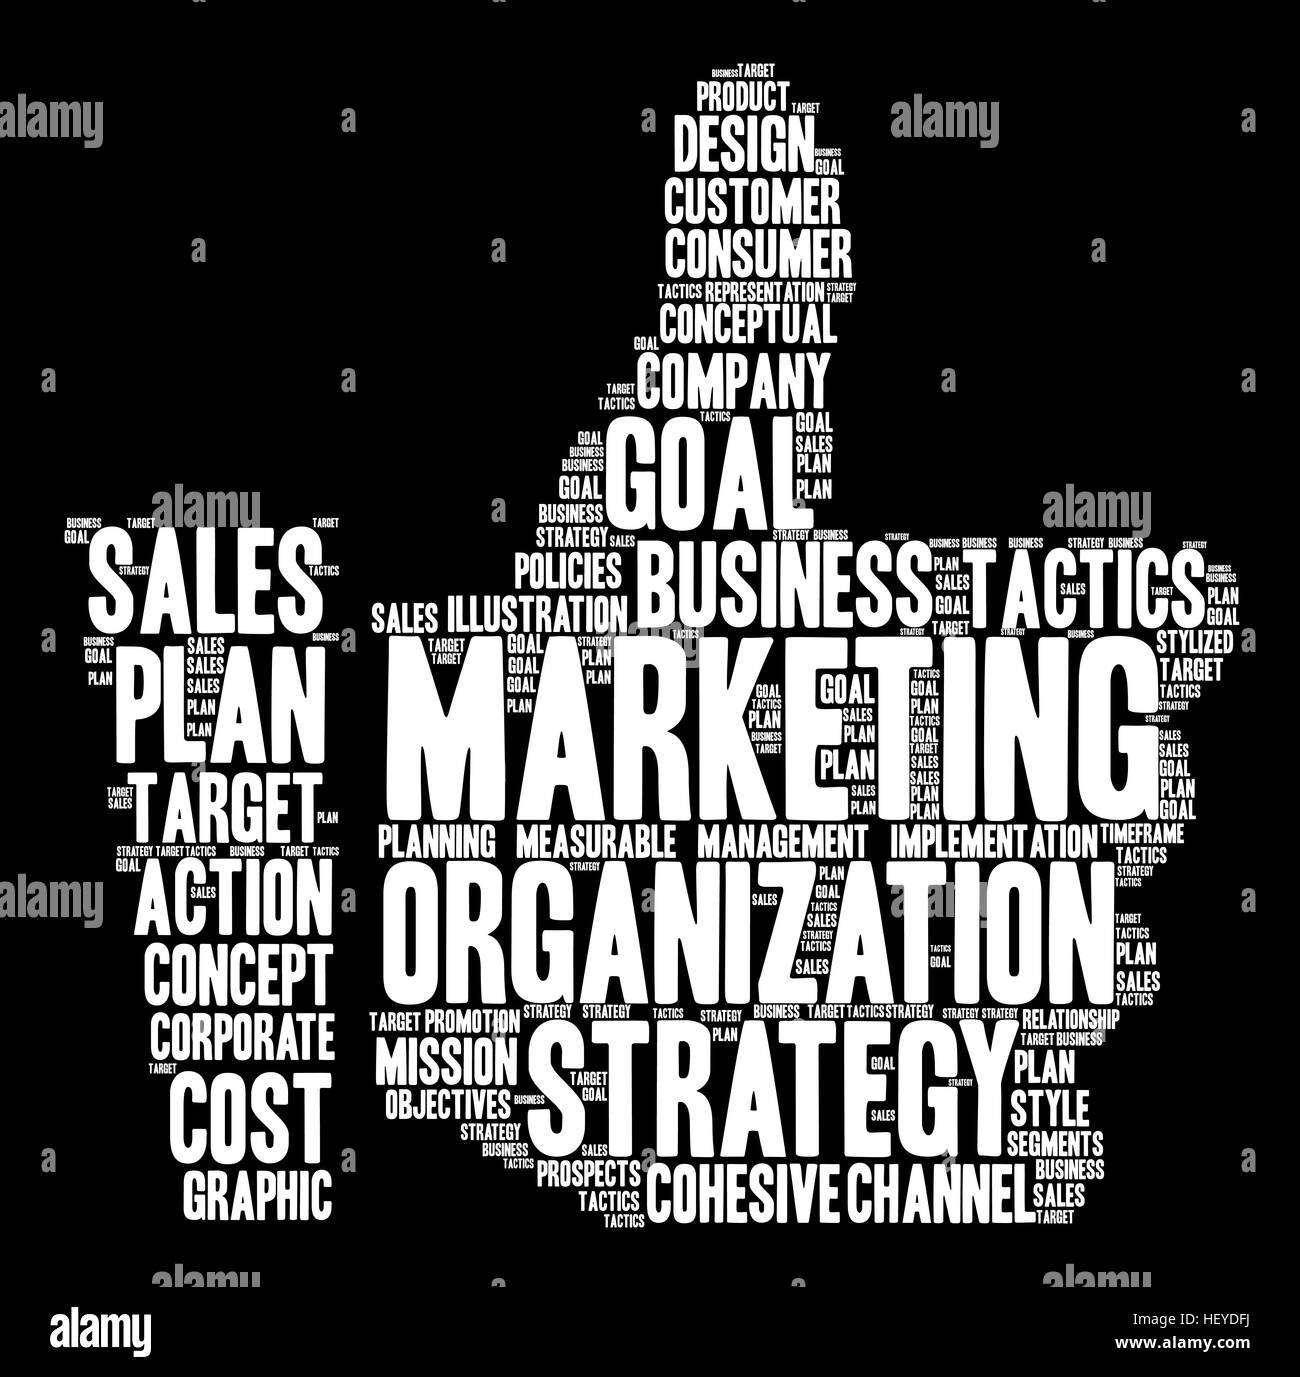 Đám mây từ Marketing trên nền đen sẽ mang đến cho bạn những điểm nhấn ấn tượng với những từ khóa Marketing nổi trên đám mây. Bạn sẽ tìm thấy niềm đam mê và khám phá nhiều ý tưởng mới từ bức ảnh này.